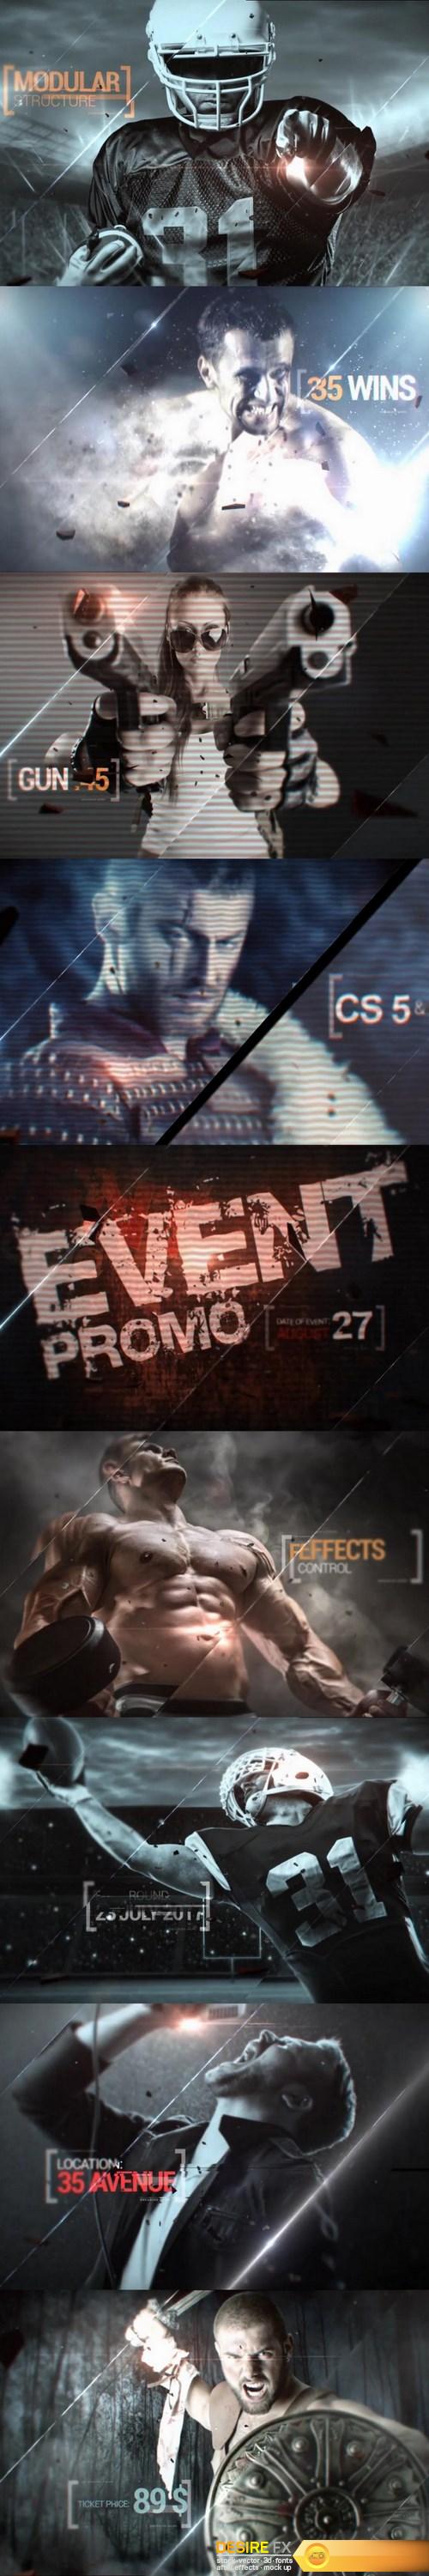 videohive-20272445-event-promo